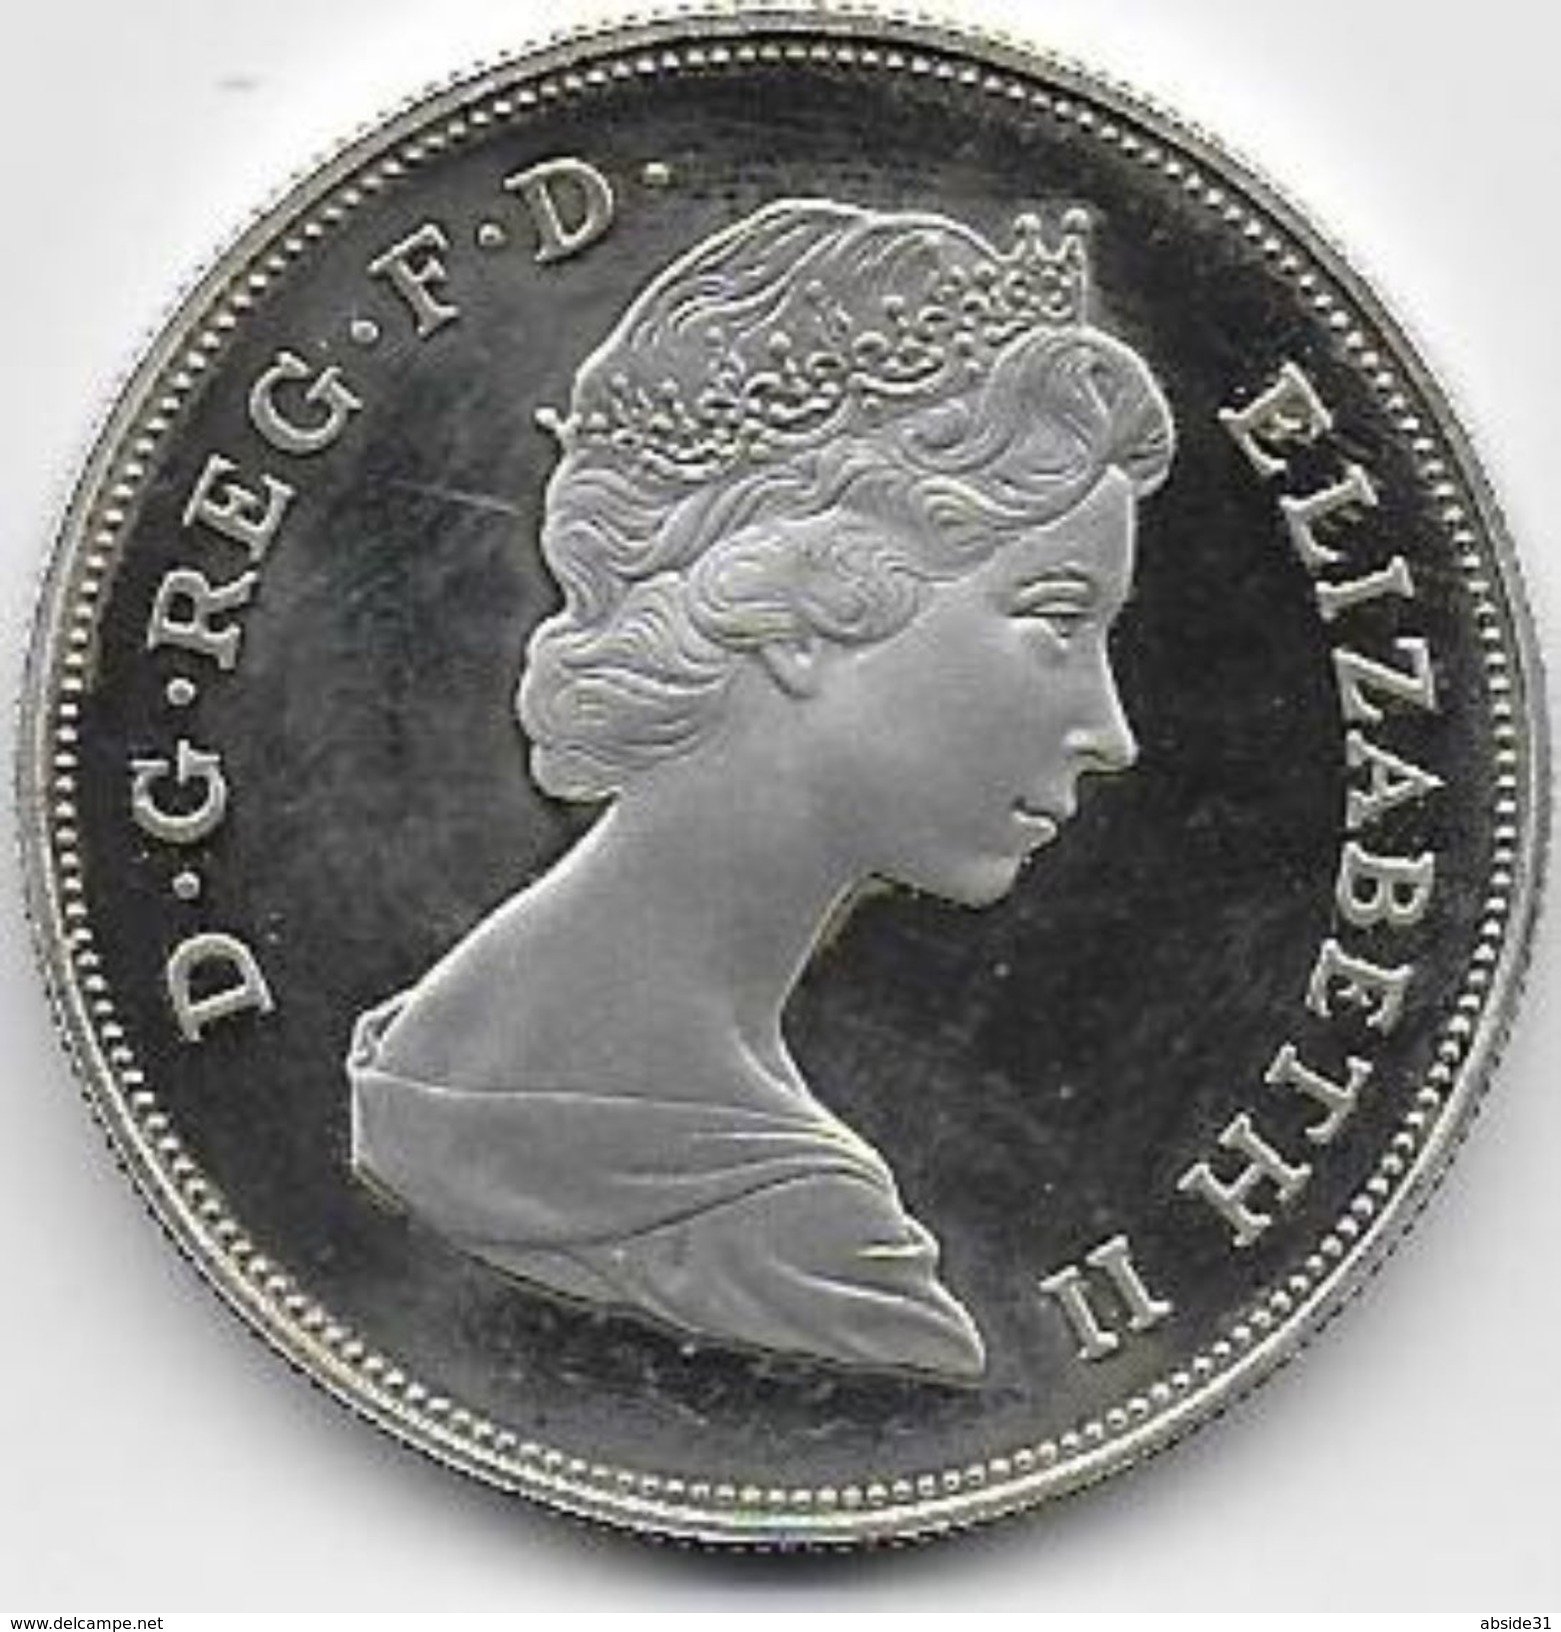 Queen Elizabeth The Queen Mother   1980 ( Proof Silver ) - Maundy Sets  & Conmemorativas